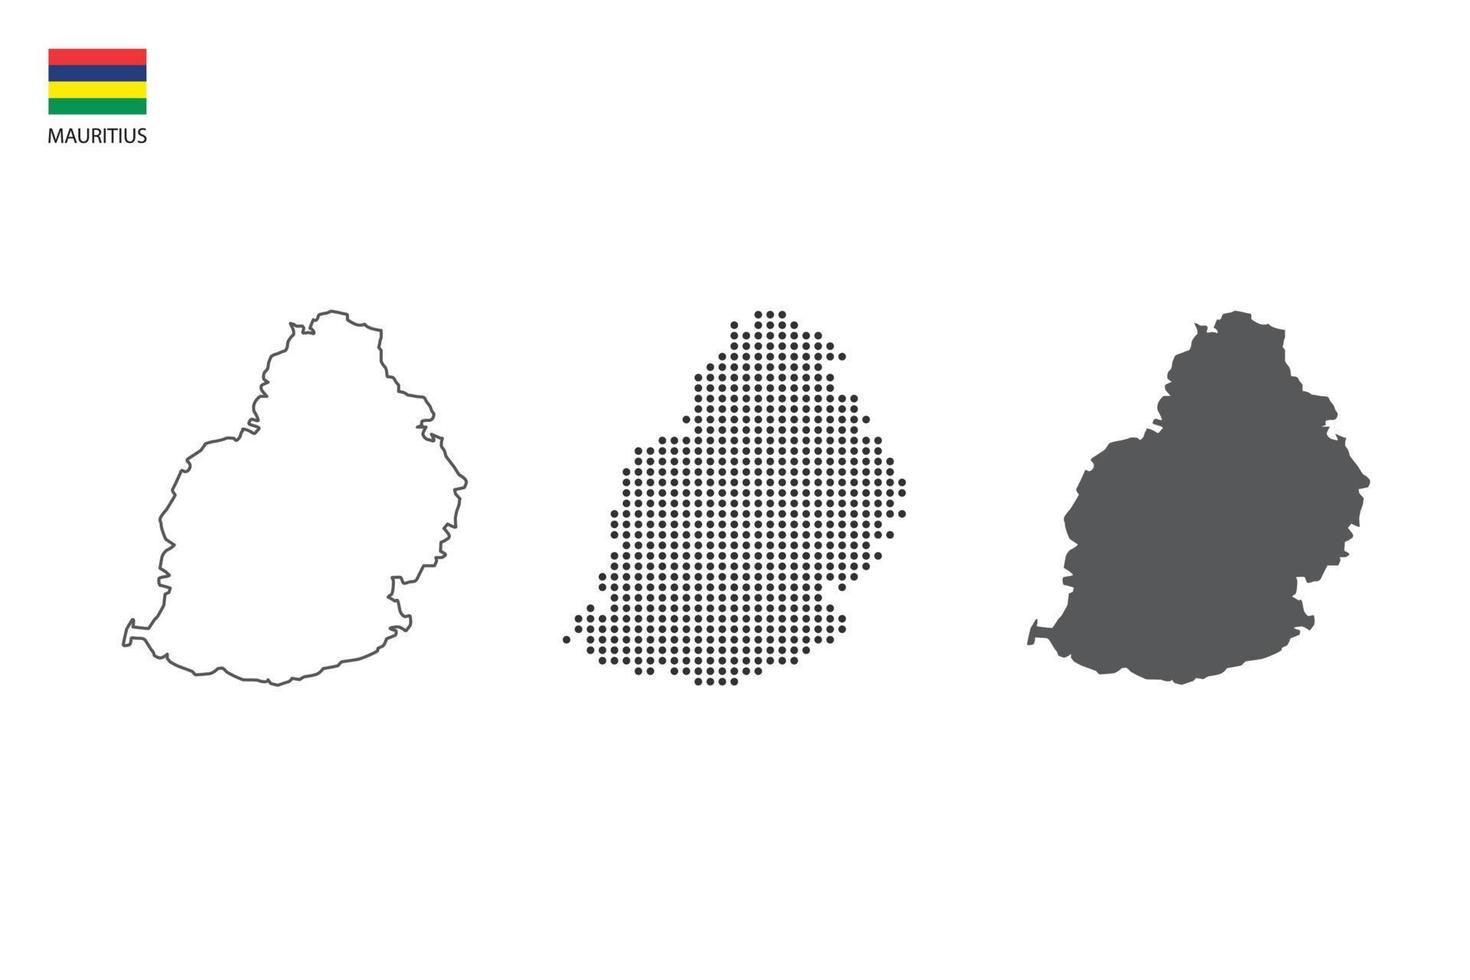 3 versões do vetor da cidade do mapa das Maurícias pelo estilo de simplicidade de contorno preto fino, estilo de ponto preto e estilo de sombra escura. tudo no fundo branco.